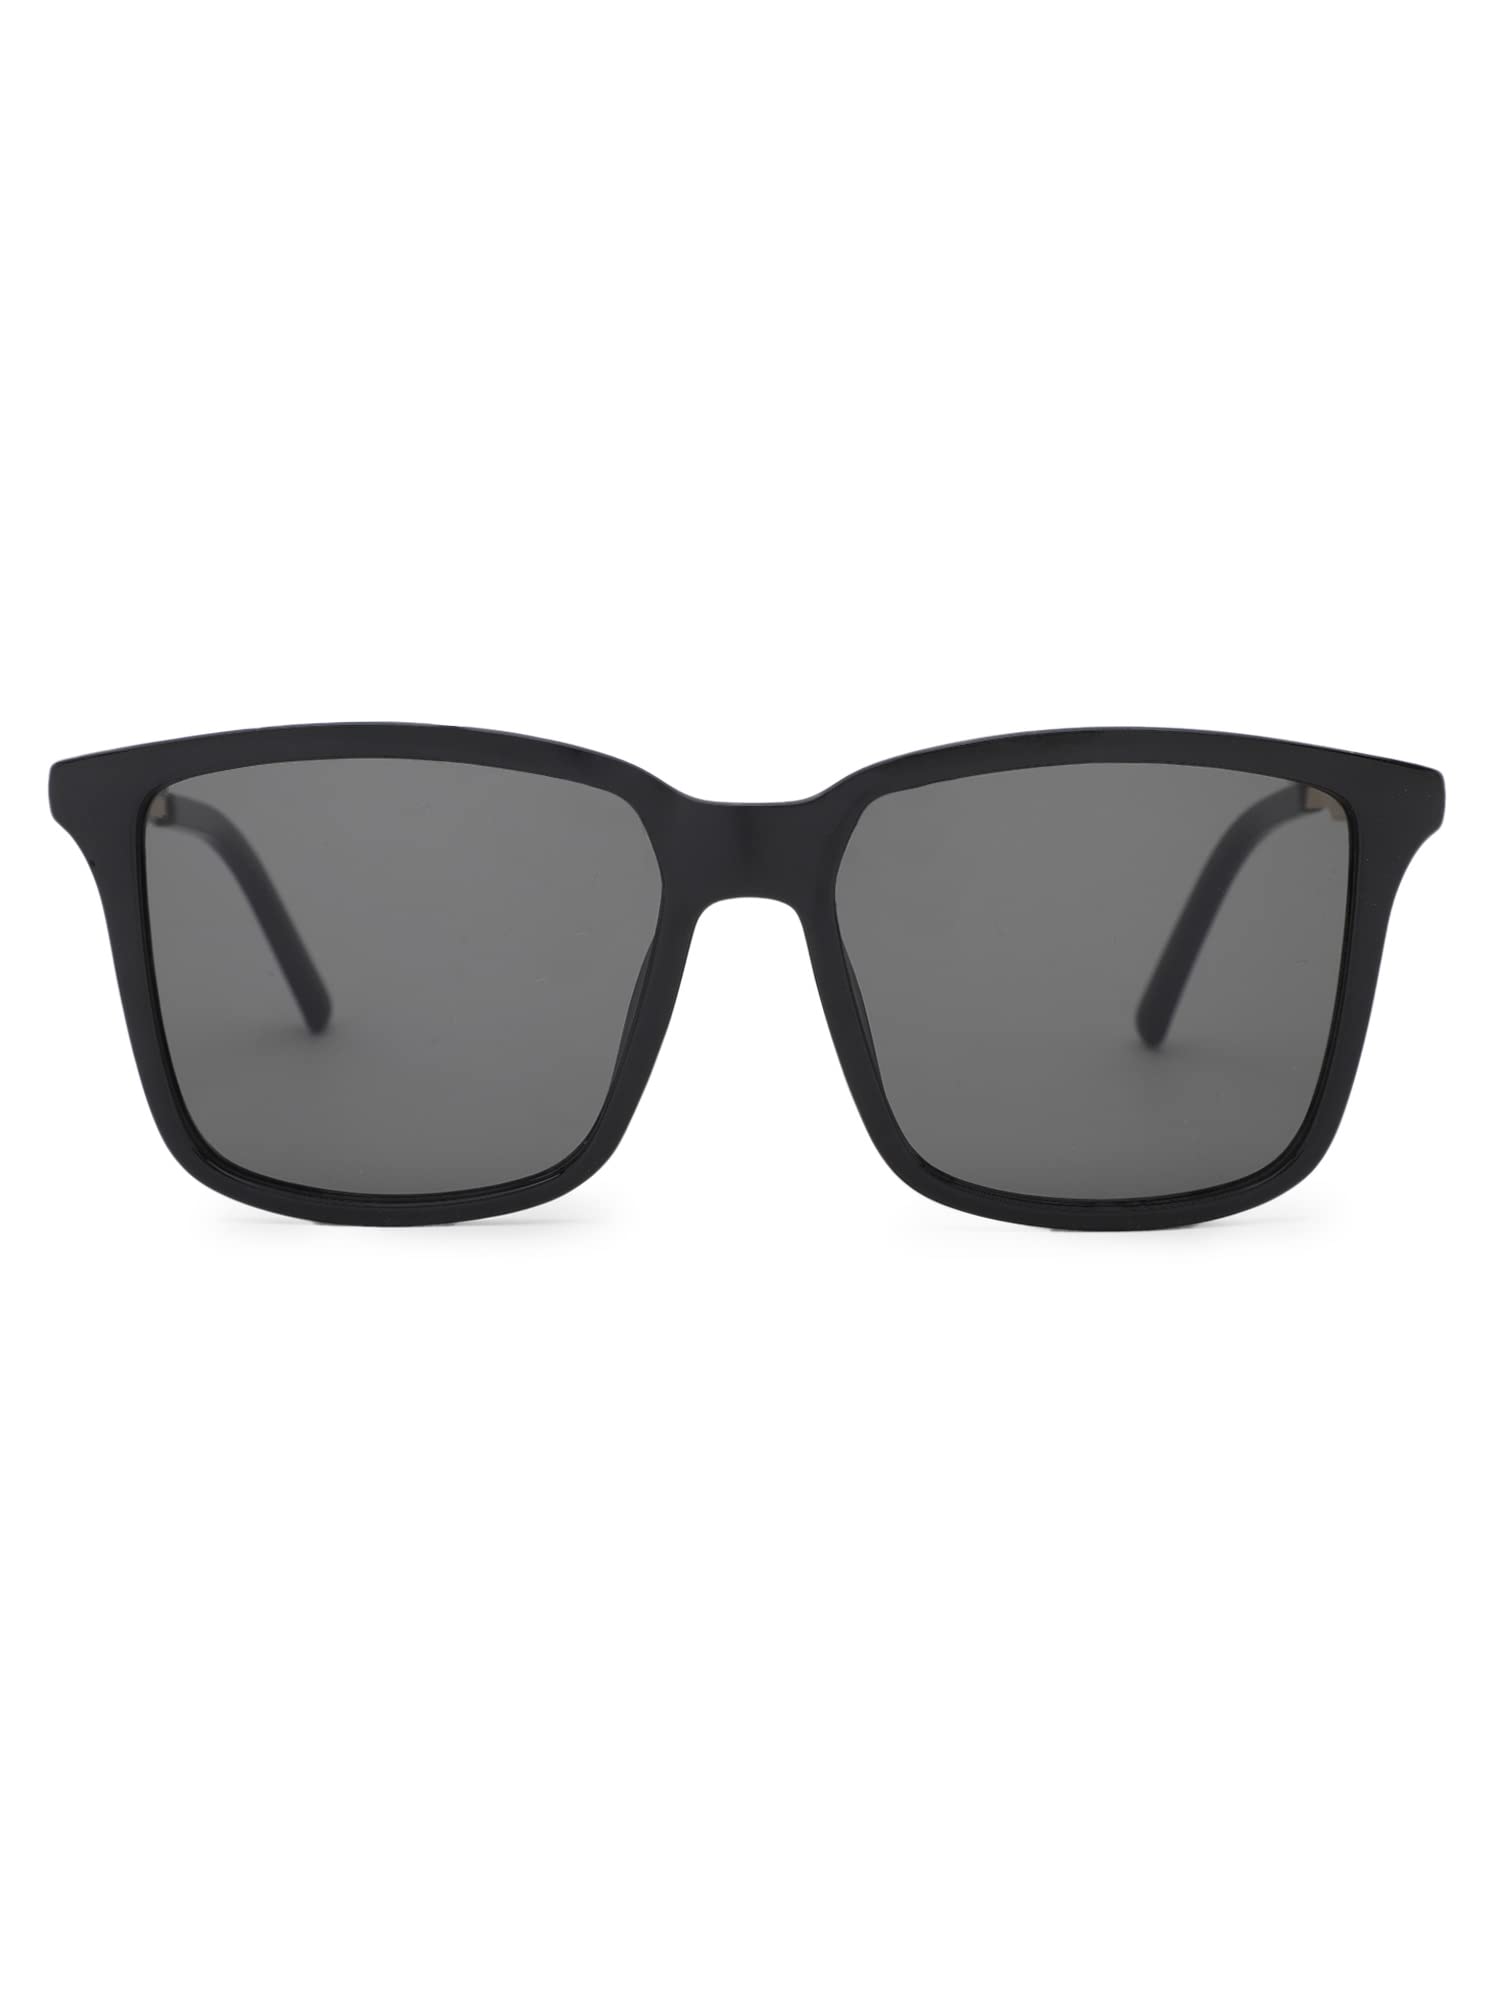 Intellilens Square UV Protected Sunglasses For Men & Women